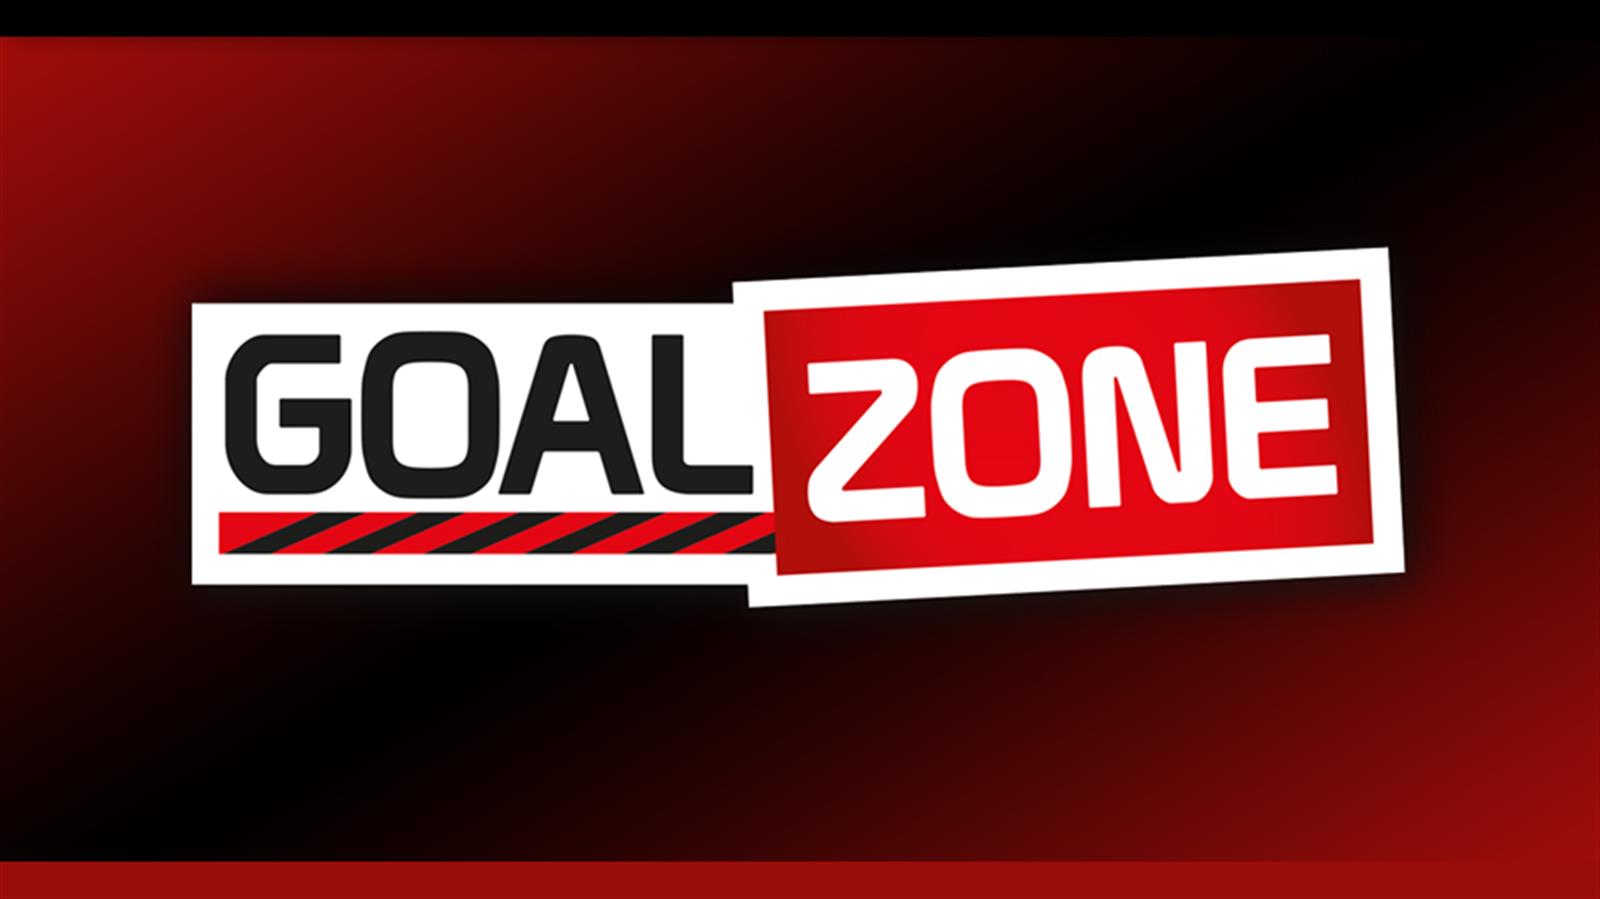 goal-zone-16x9-a271-3444503_1600x900